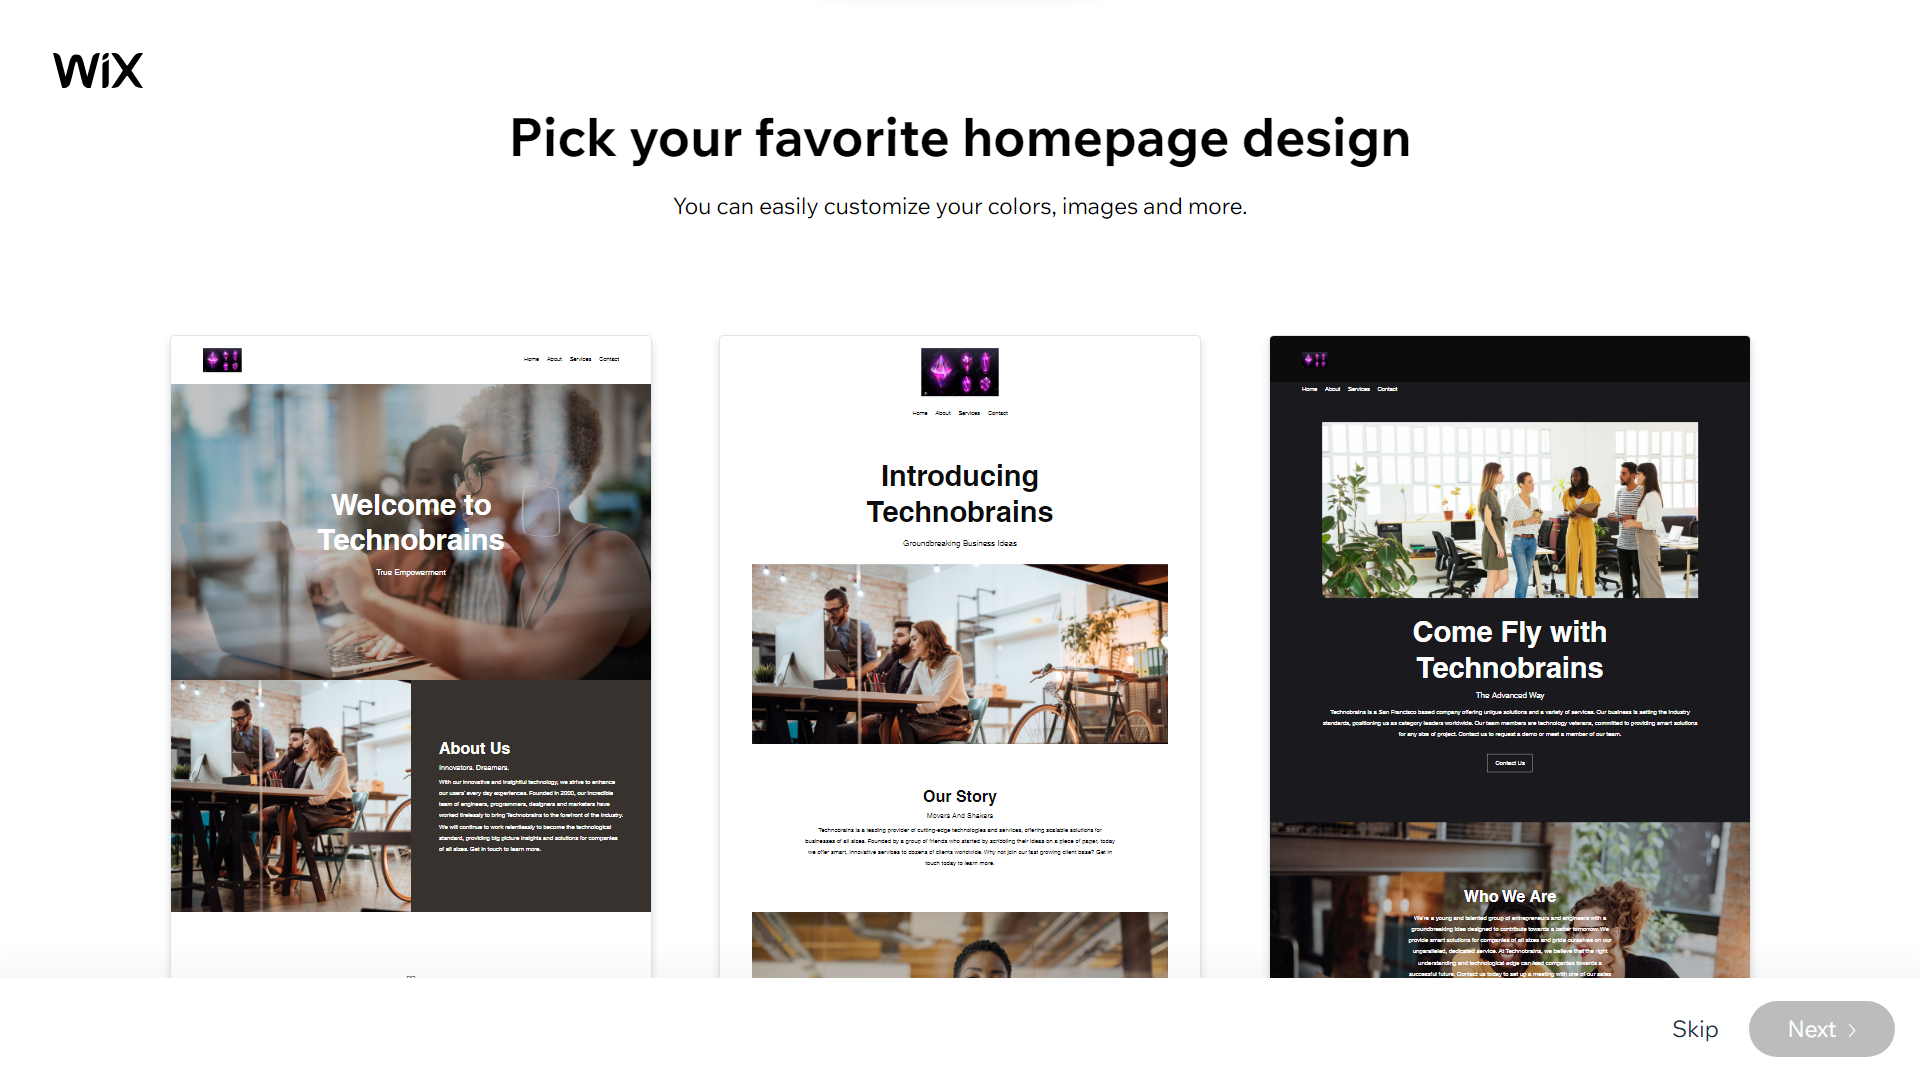 Wix - Picking homepage design